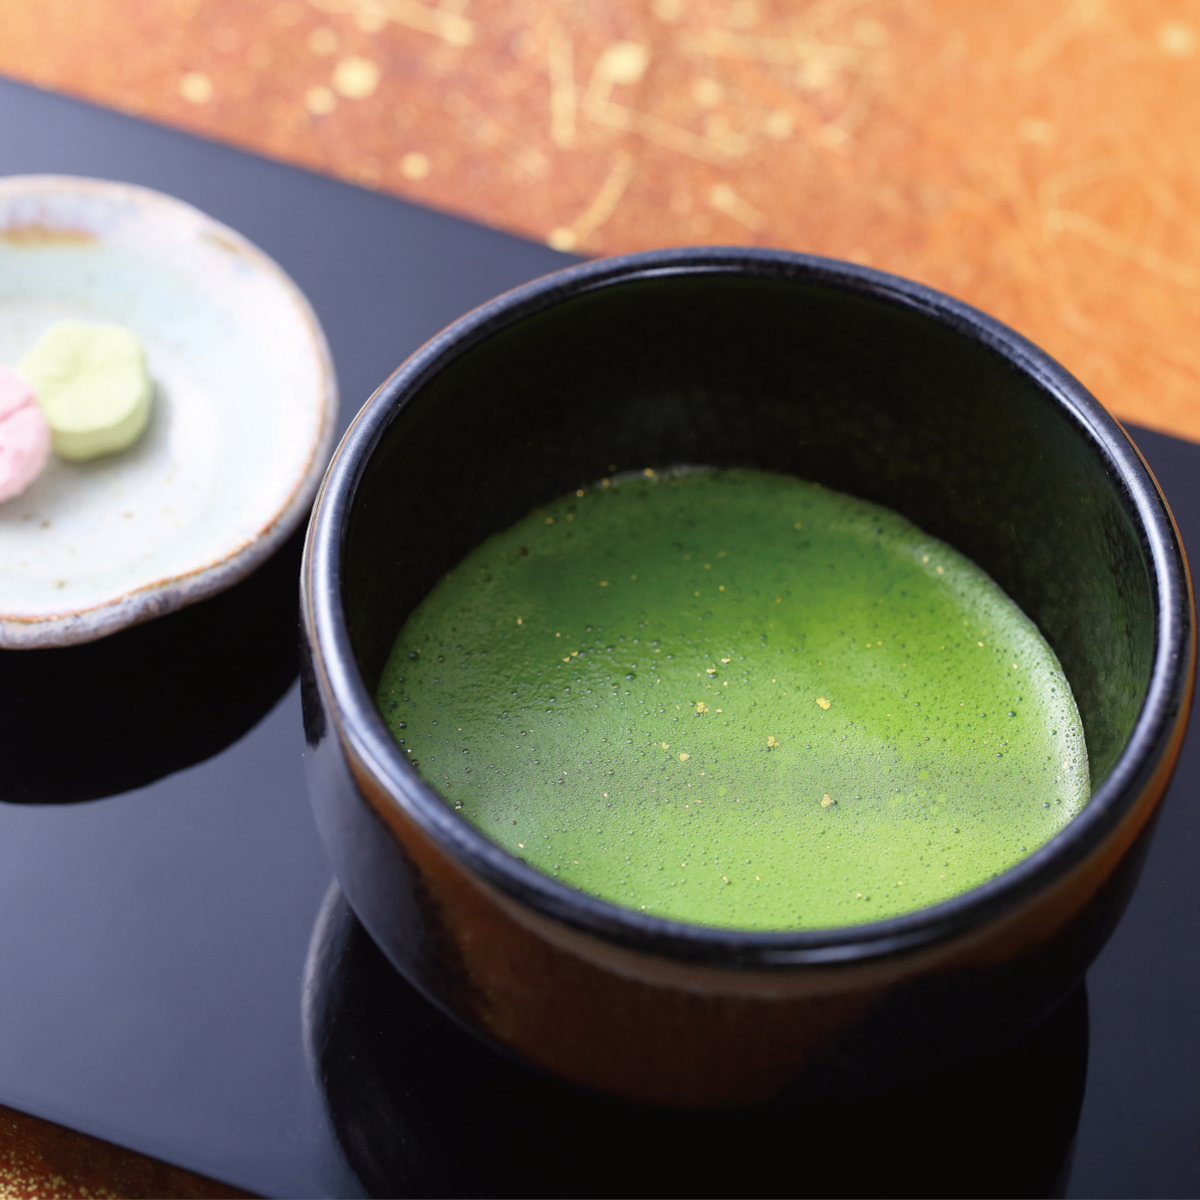 Matcha beginner set (A) - Starter kit for Japanese Tea ceremony